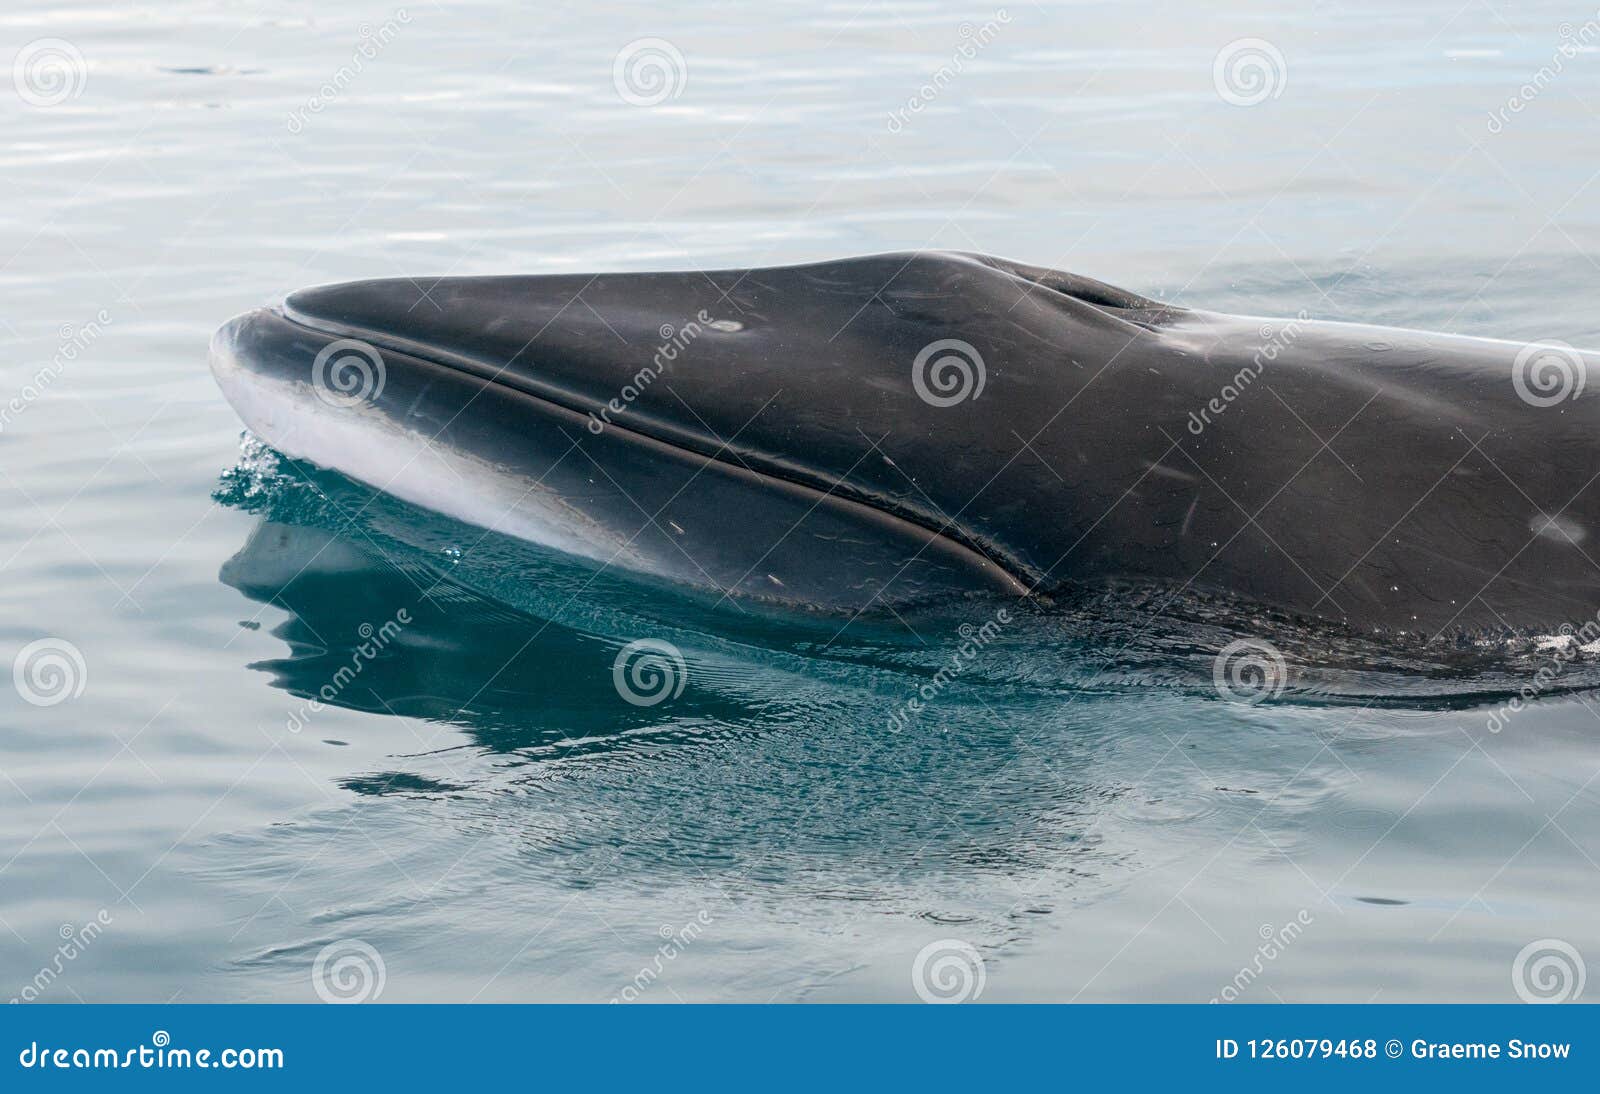 4K超美海洋鲸鱼视频素材,特写慢镜视频素材下载,高清3840X2160视频素材下载,凌晨两点视频素材网,编号:16215